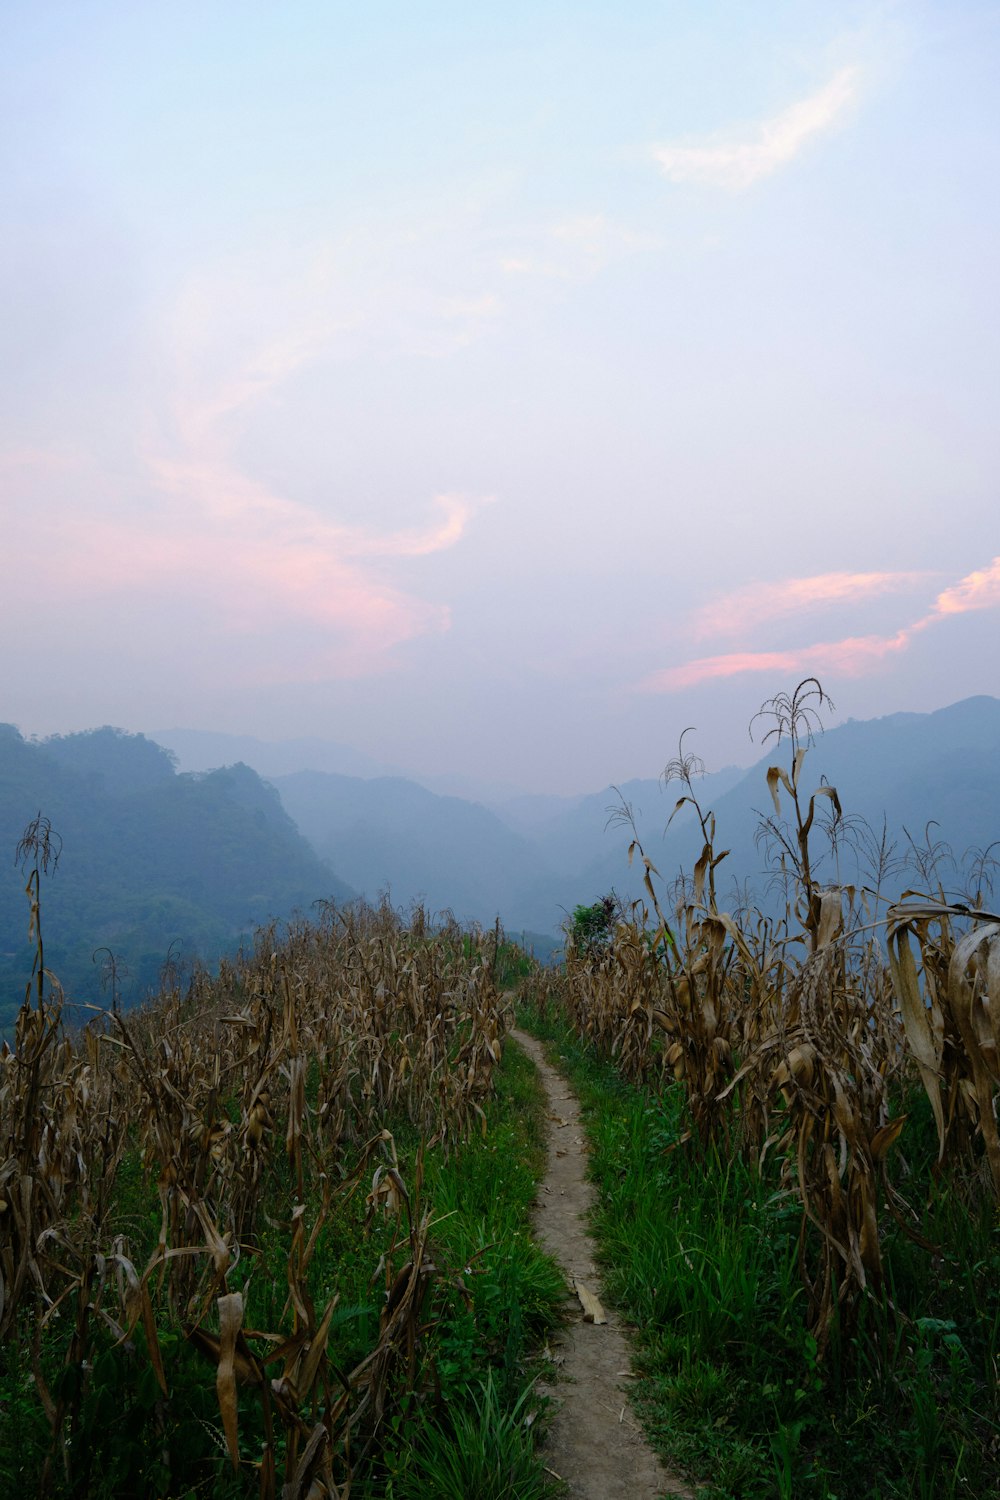 a dirt path going through a corn field